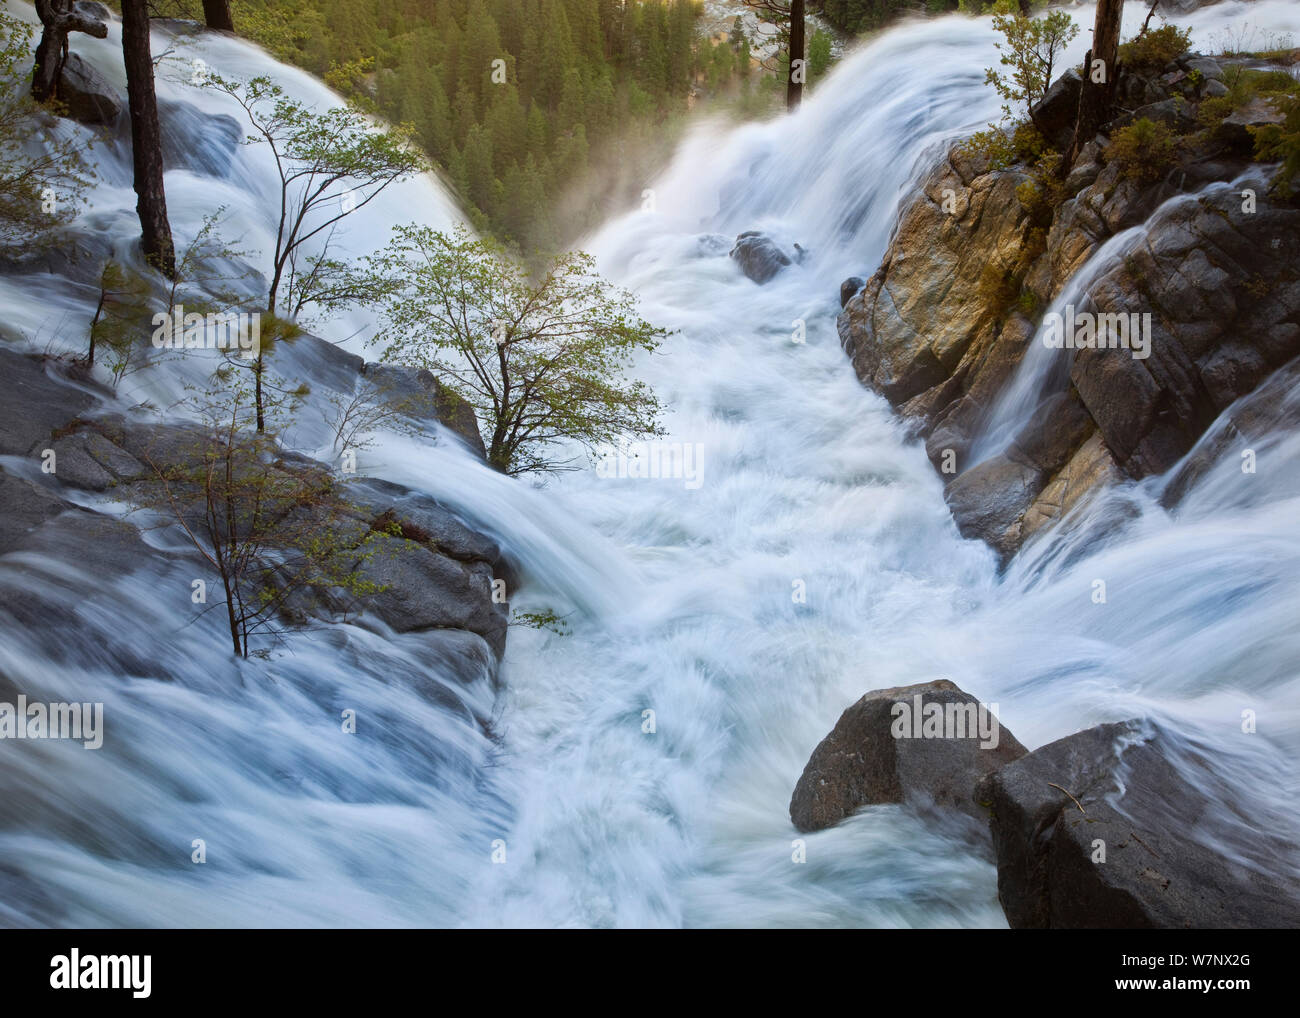 L'eau de la fonte de neige à haute altitude, créant une immense volume d'eau, la Californie Yosemite National Park, juin. Banque D'Images